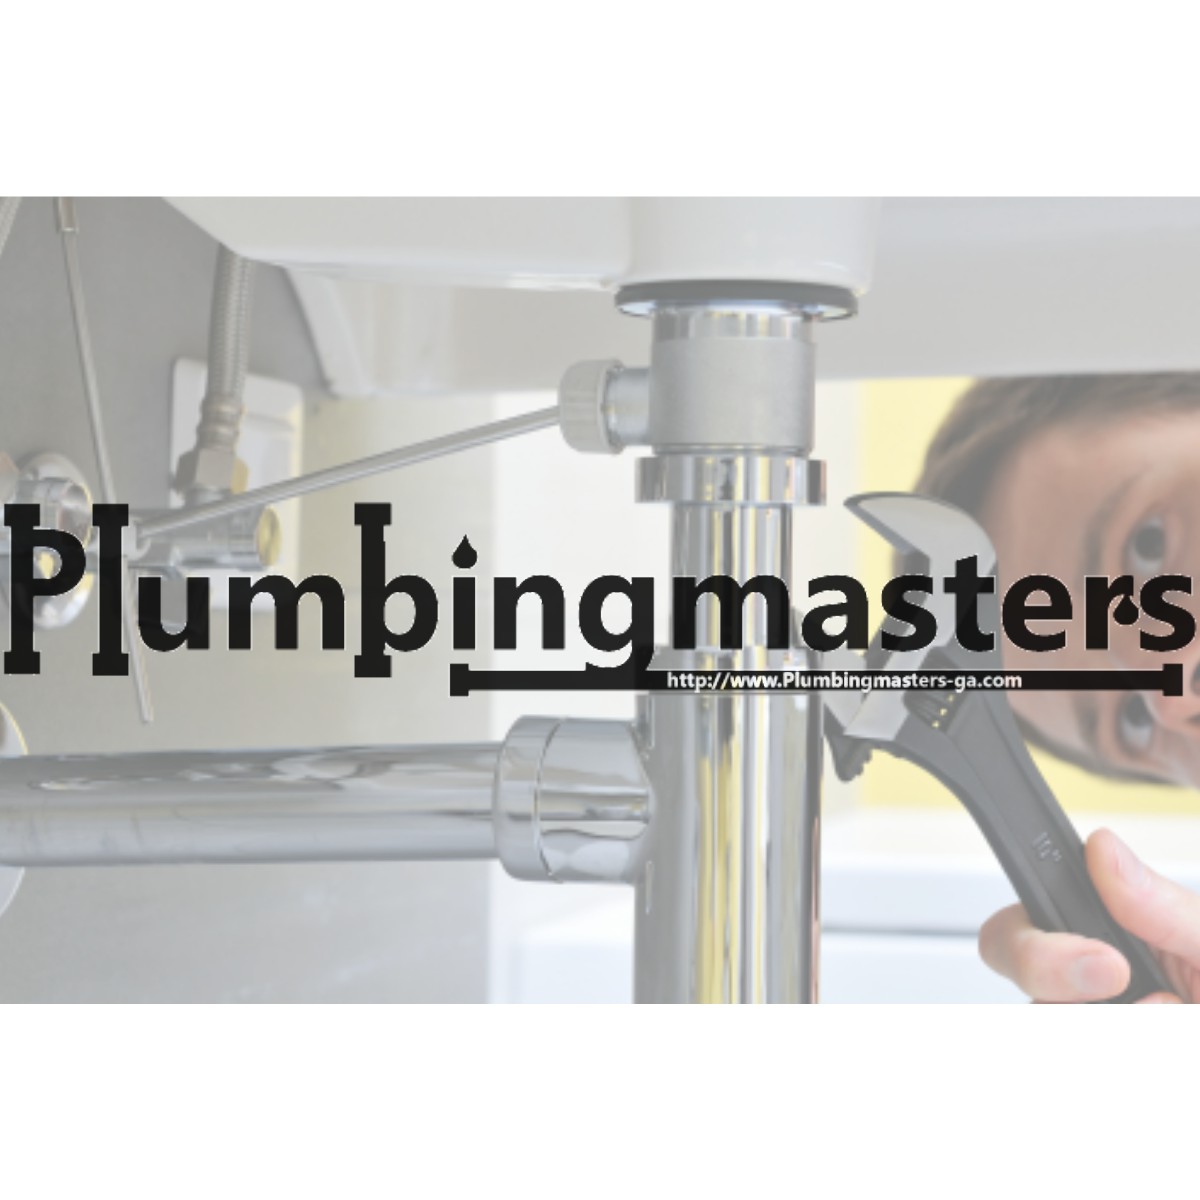 Plumbing Masters Photo